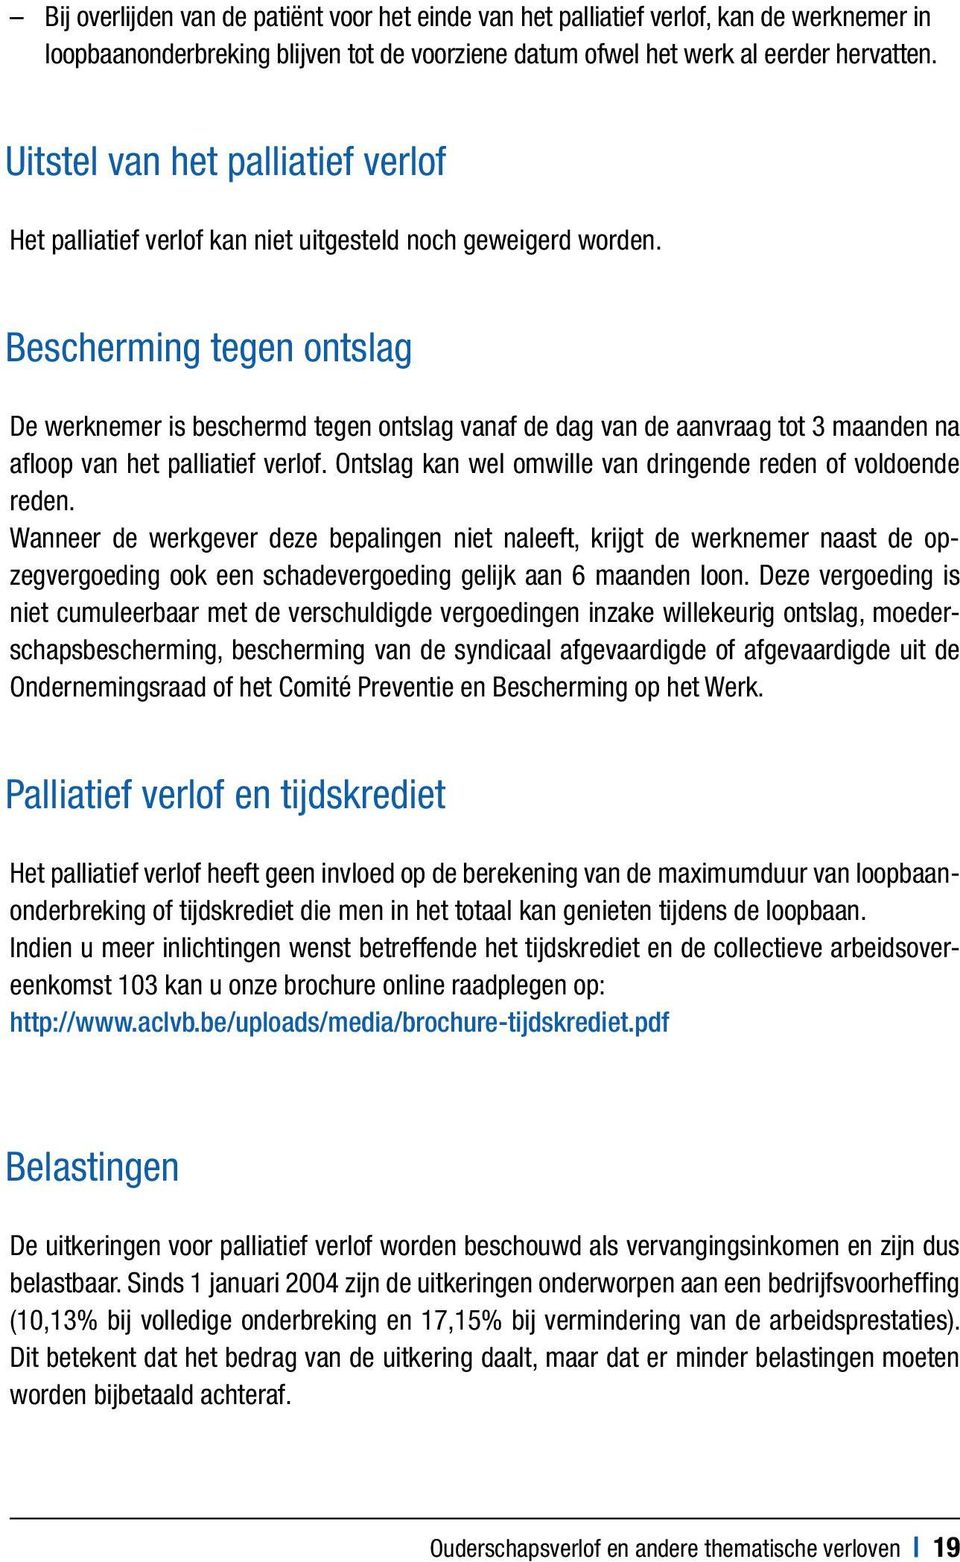 FEBRUARI Ouderschapsverlof. en andere thematische. verloven. - PDF Gratis  download